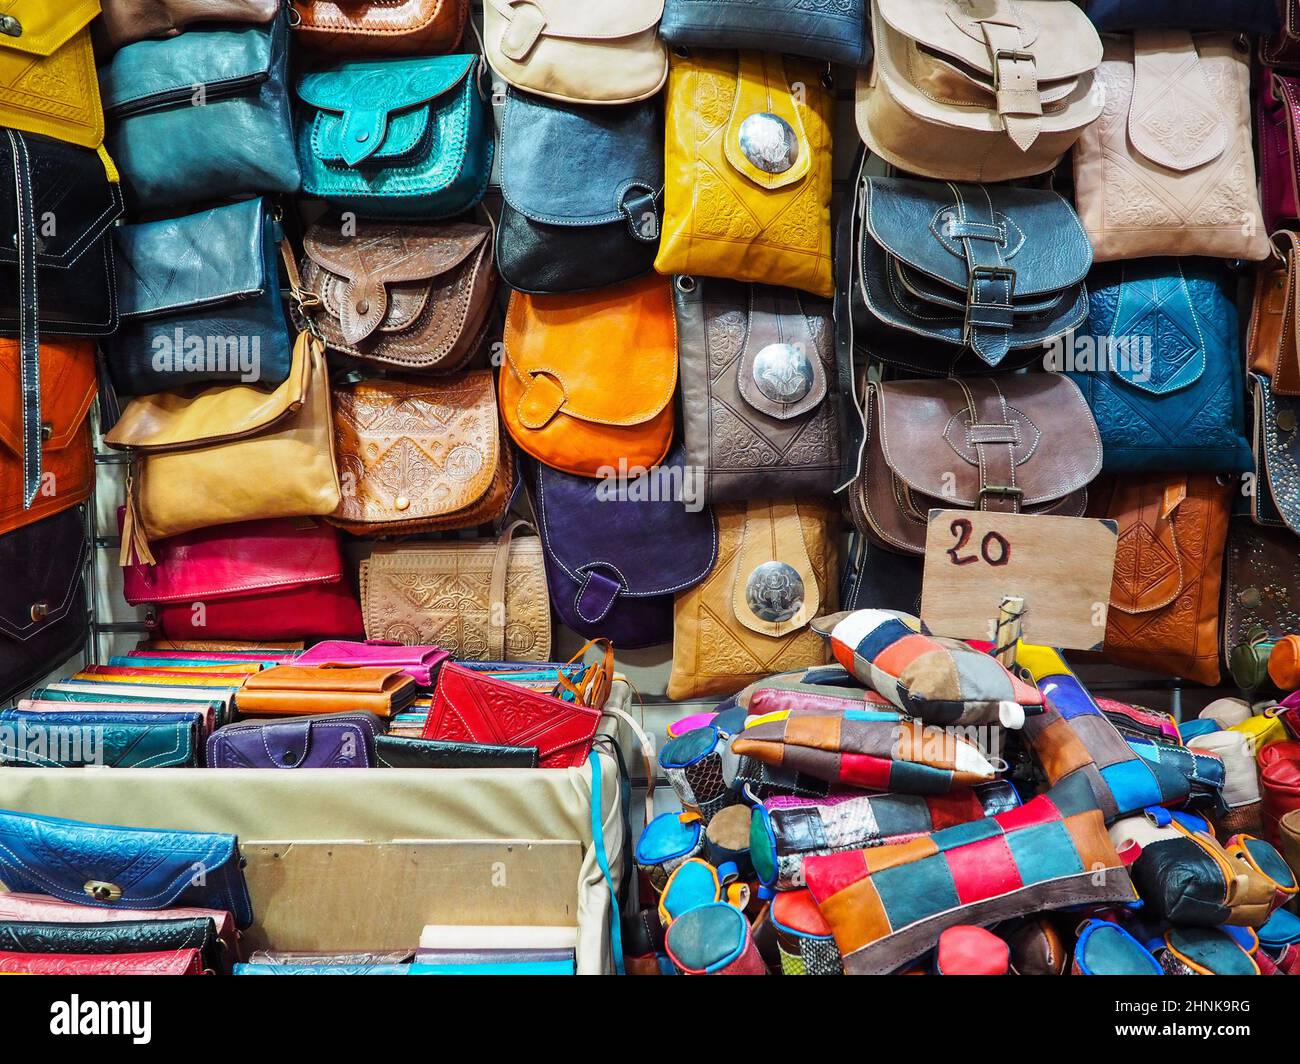 Borse e borse in pelle colorate fatte a mano in mostra al tradizionale souk - mercato di strada in Marocco Foto Stock